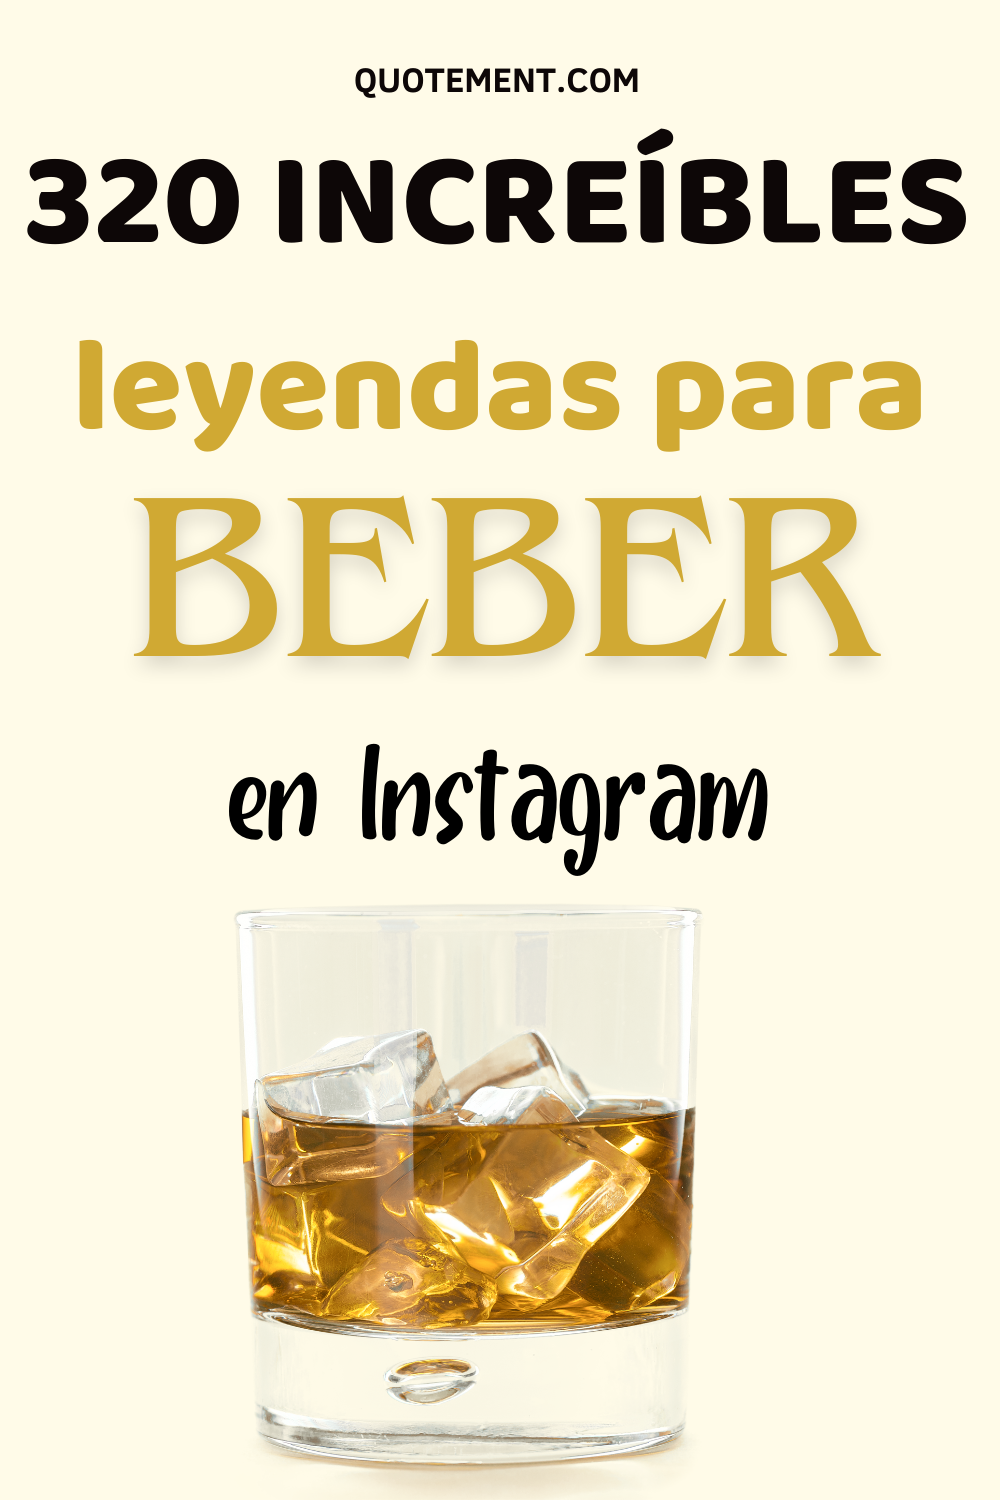 320 leyendas chulas y pegadizas para beber en Instagram